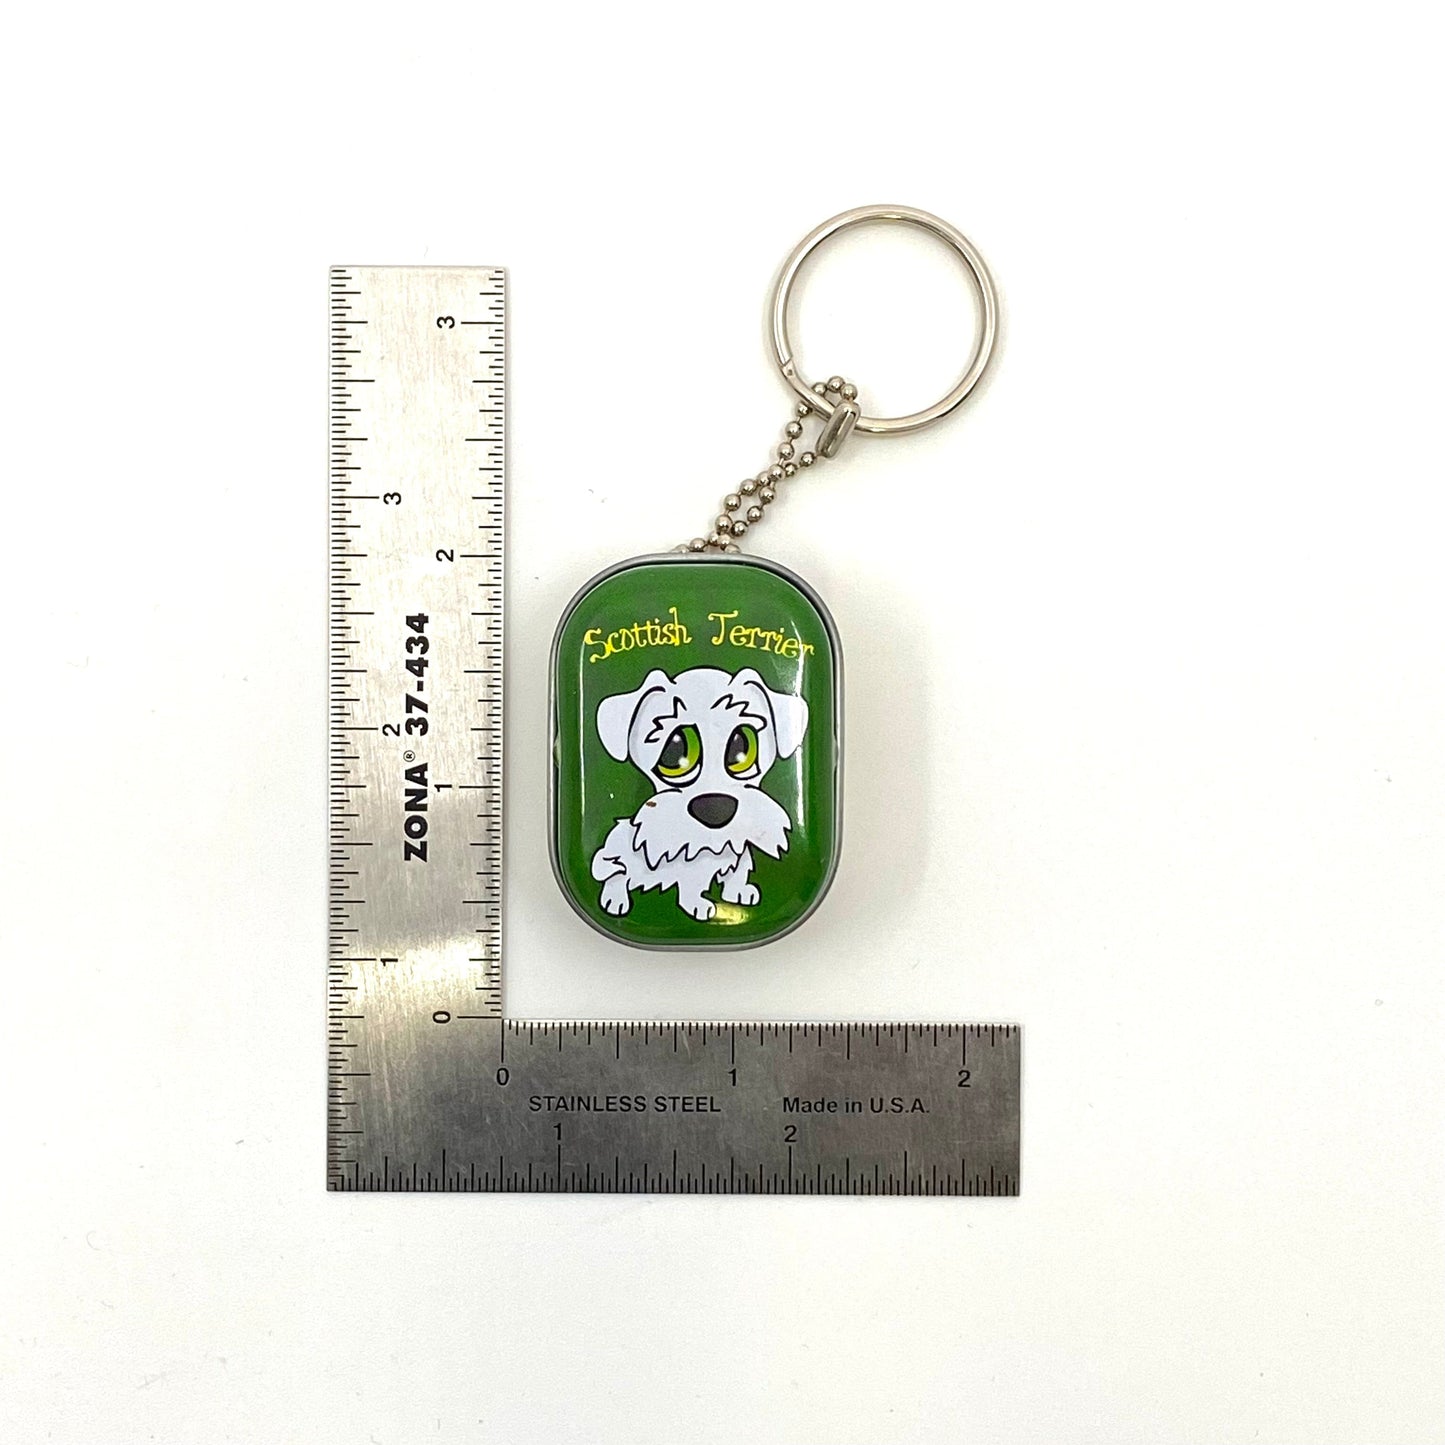 Novelty “Scottish Terrier” Pendant Charm Box Keychain Key Ring